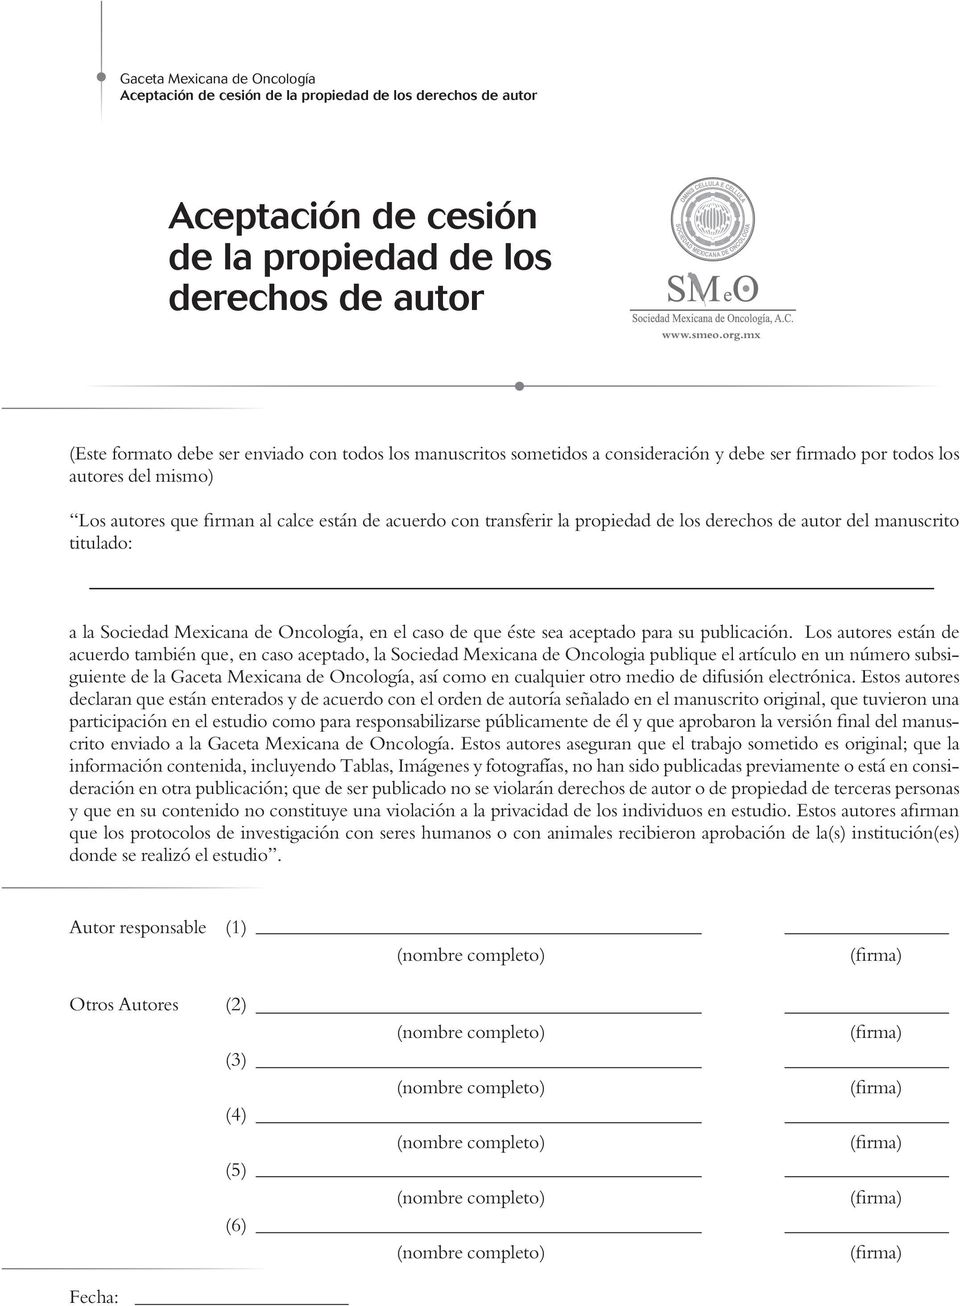 transferir la propiedad de los derechos de autor del manuscrito titulado: a la Sociedad Mexicana de Oncología, en el caso de que éste sea aceptado para su publicación.